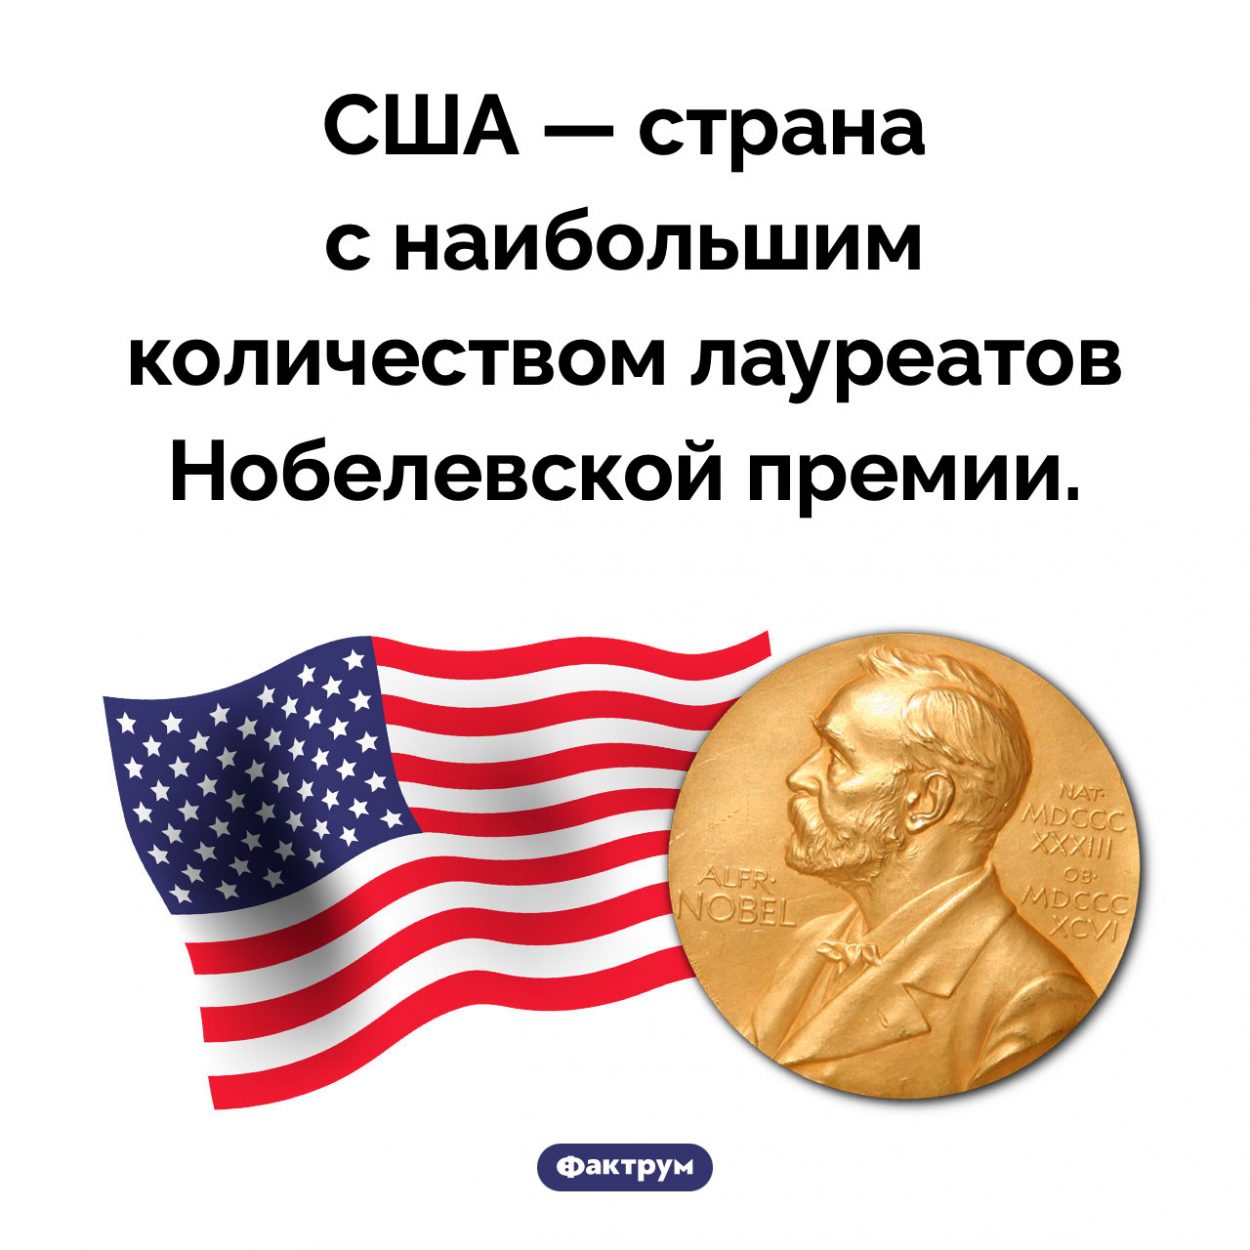 Страна-лидер по количеству нобелевских лауреатов. США — страна с наибольшим количеством лауреатов Нобелевской премии.